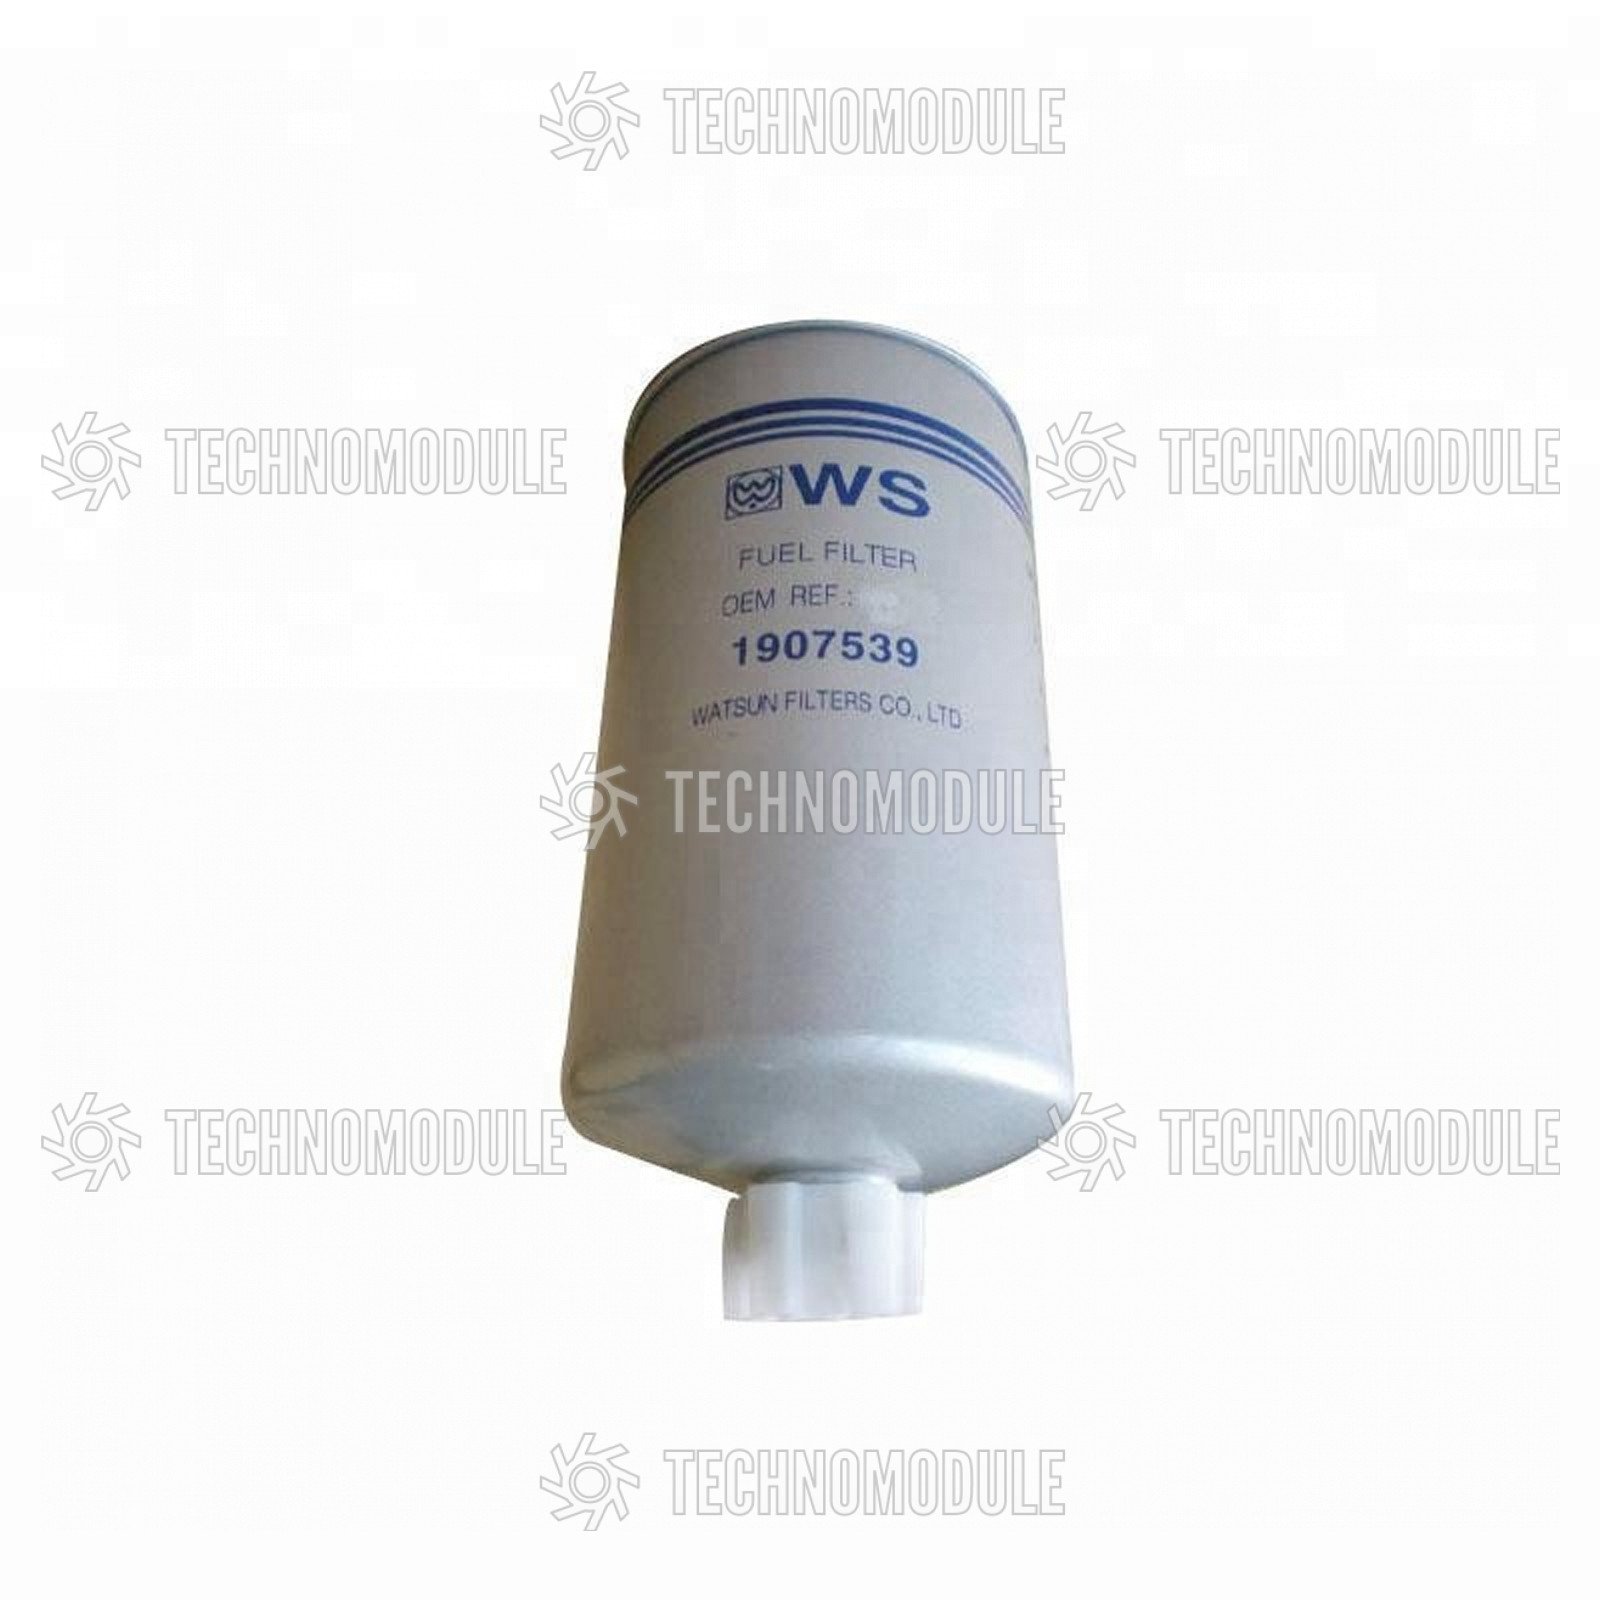 Фильтр грубой очистки топлива Iveco (Weibon) - Изображение 2